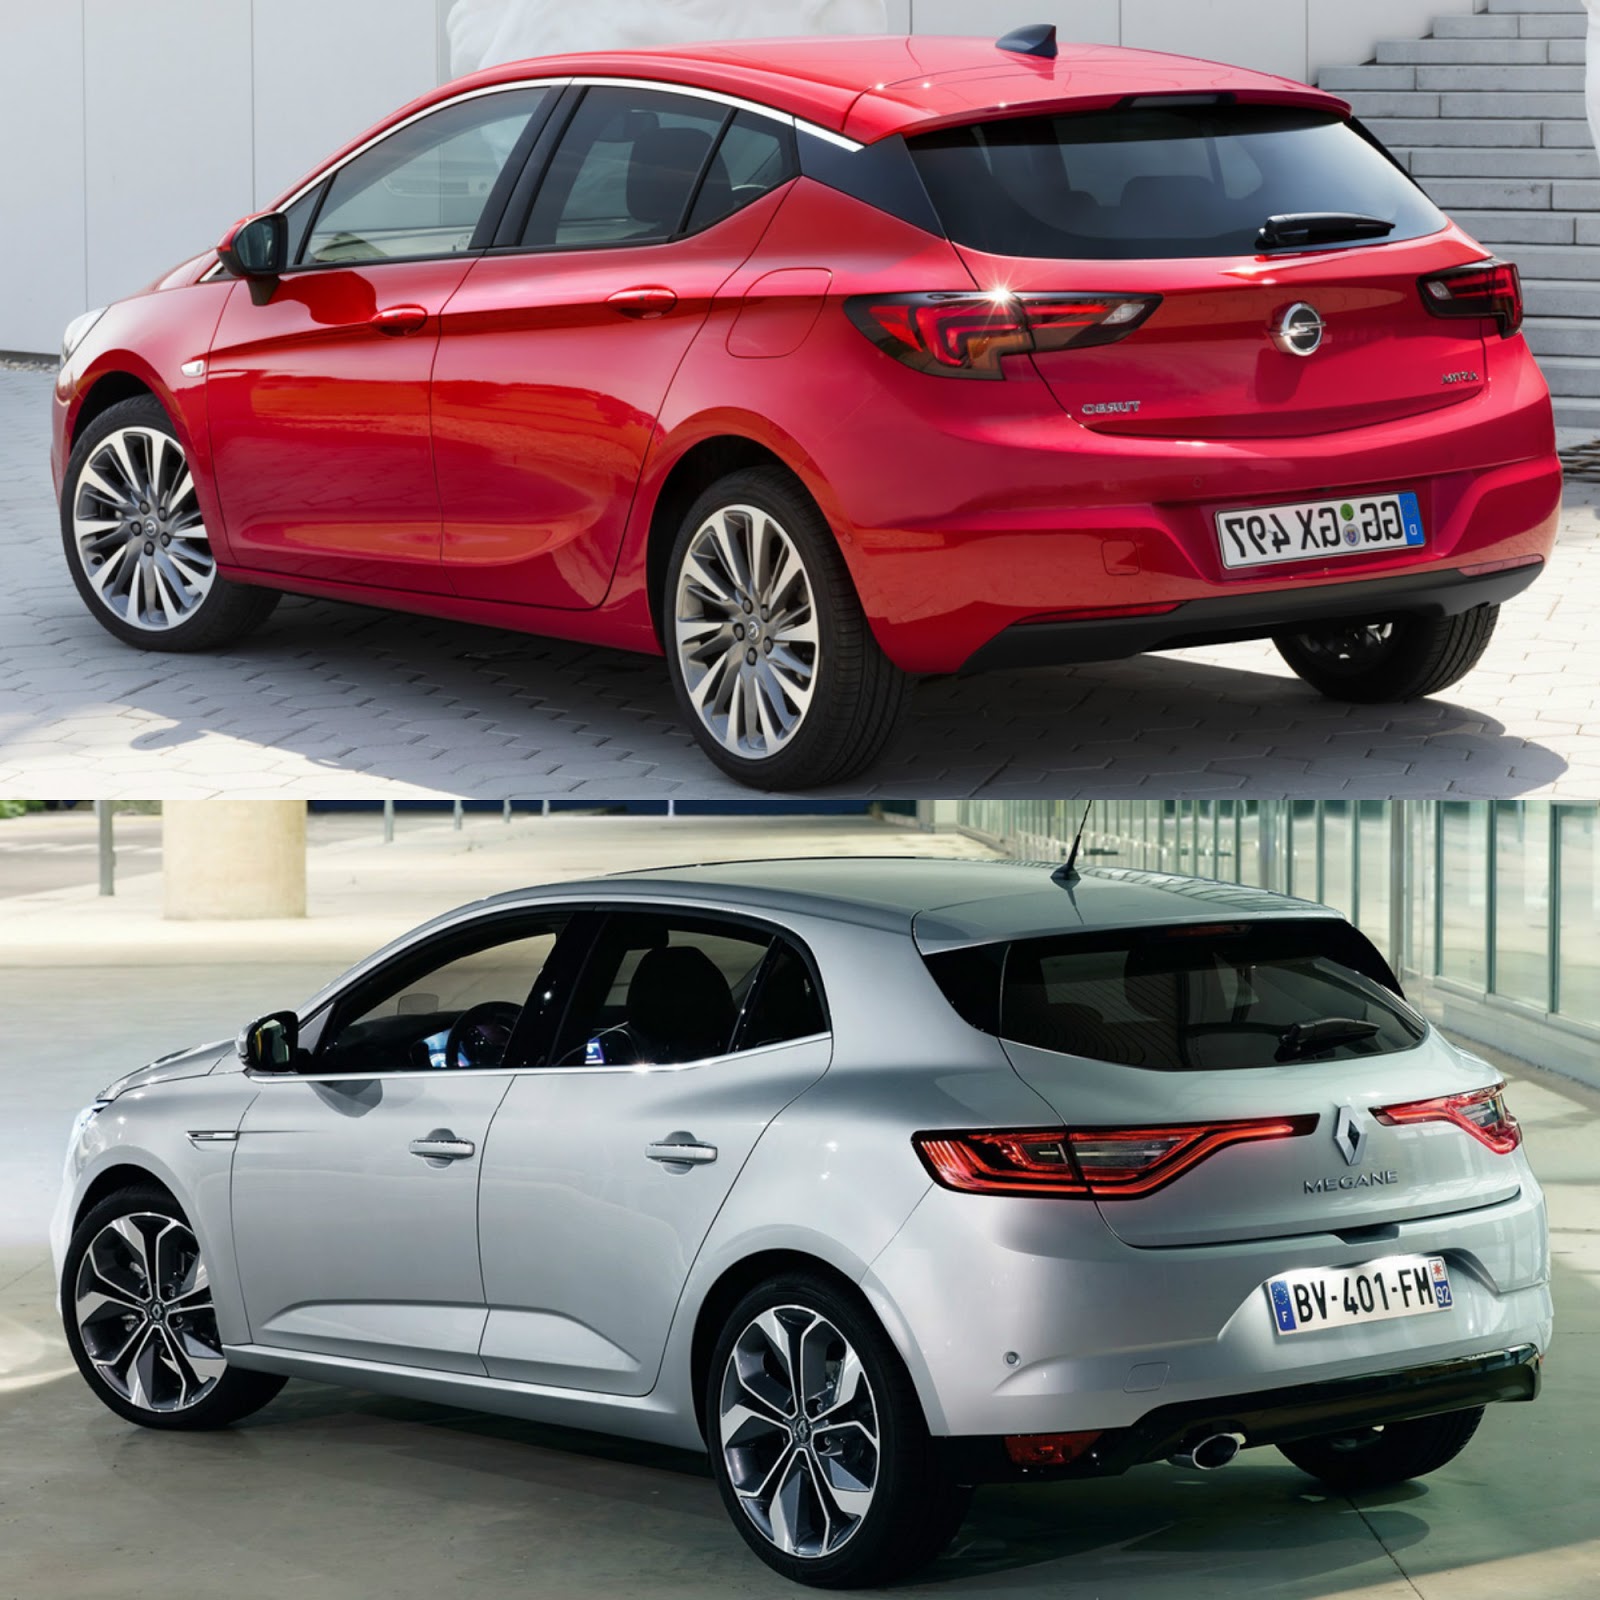 Yeni Opel Astra Yeni Renault Megane Karşılaştırması